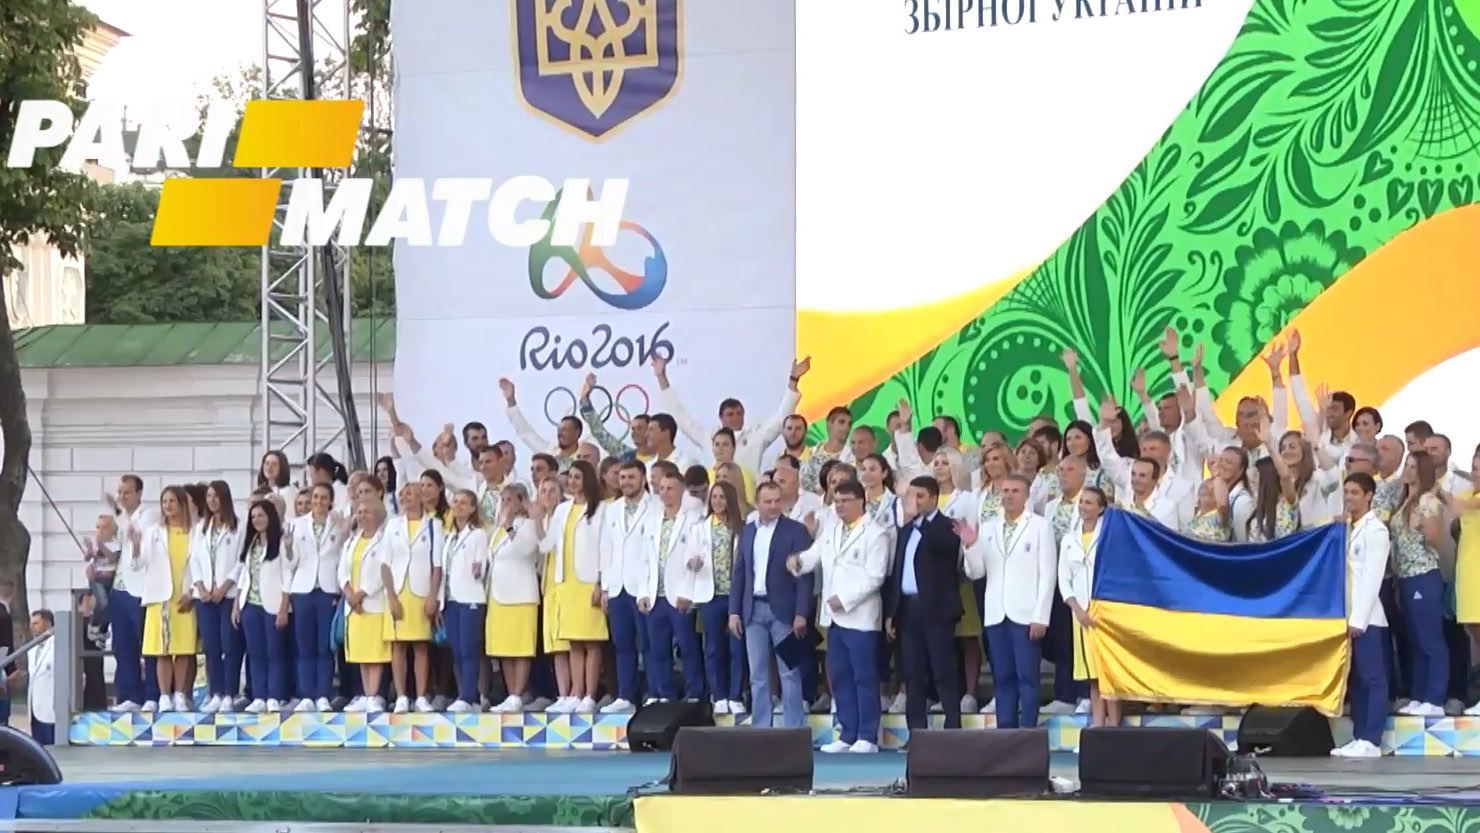 Украина замыкает десятку самых щедрых стран-участников игр в Рио